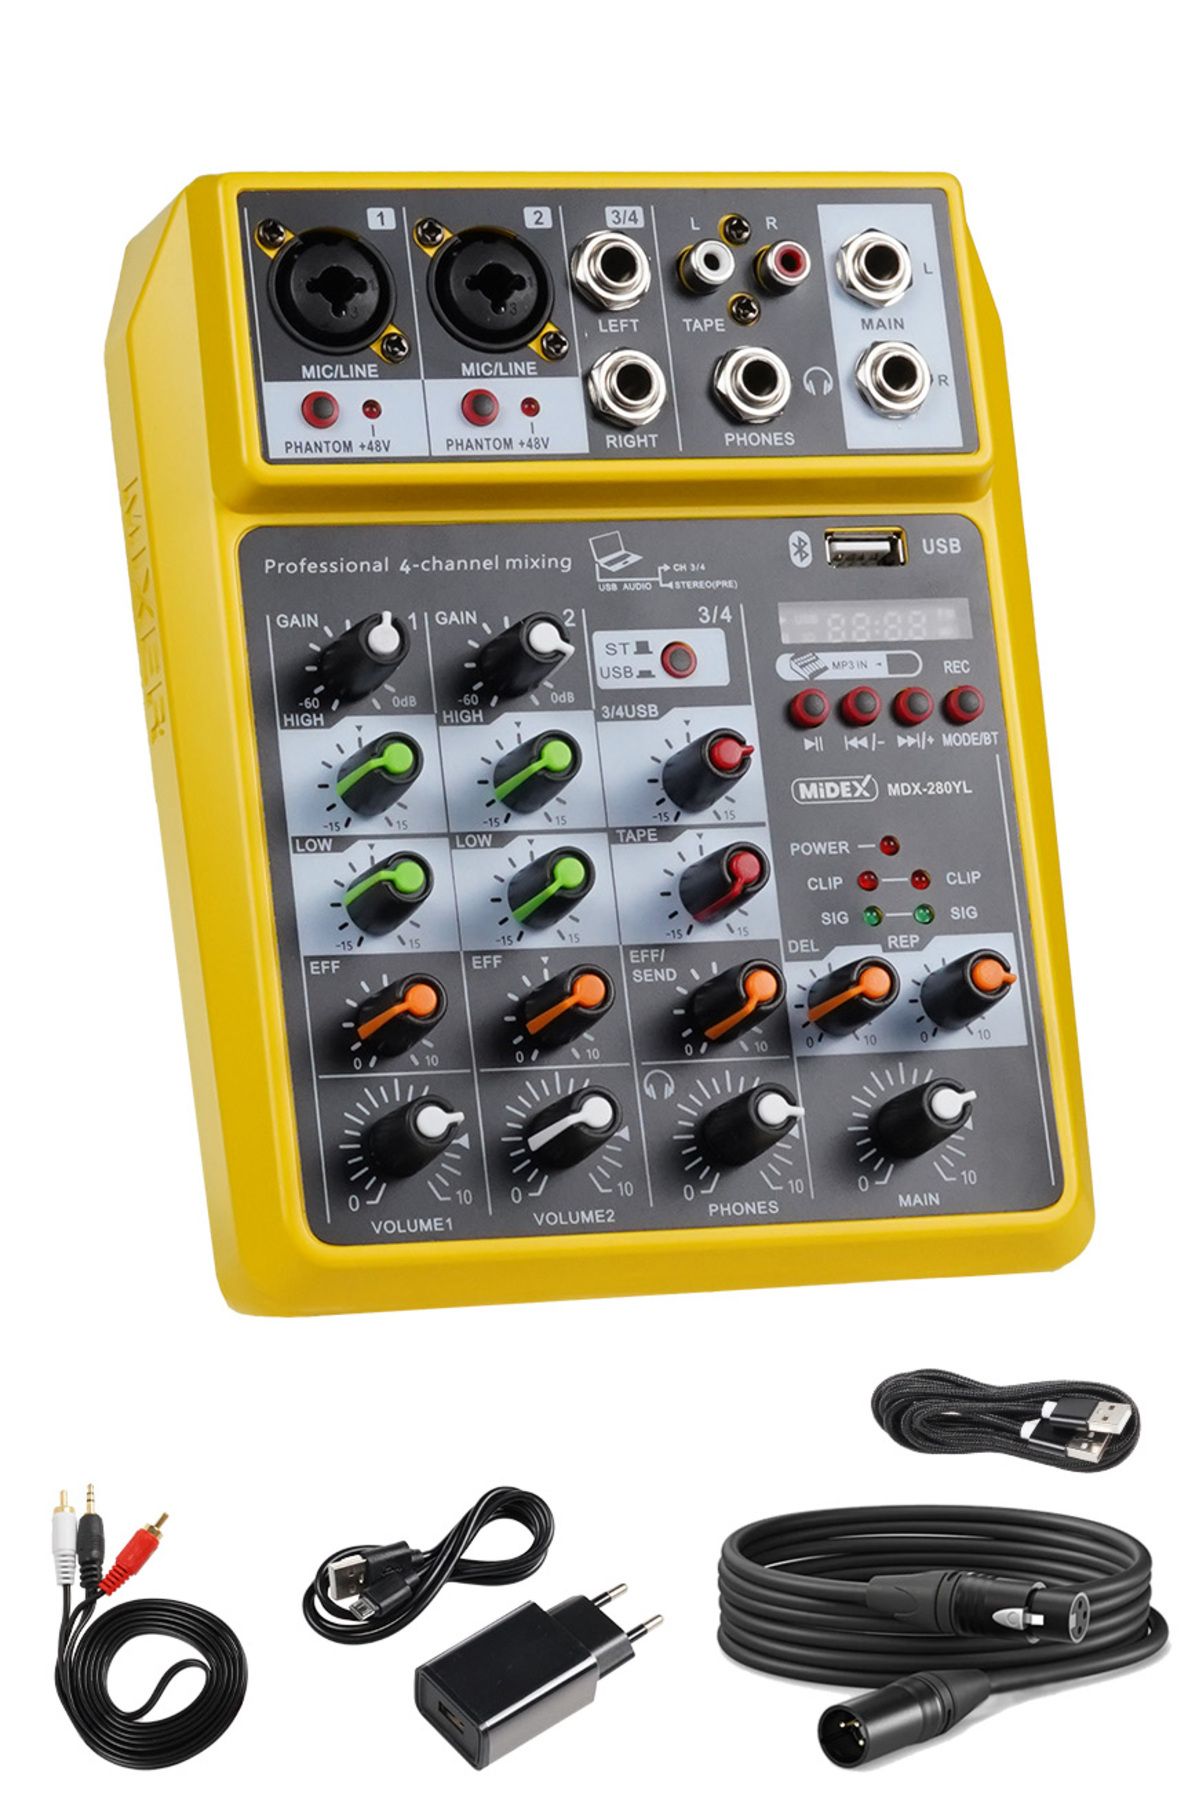 Midex MDX-280YL Ses Kartlı Ses Mikseri Stüdyo Kayıt Mixer